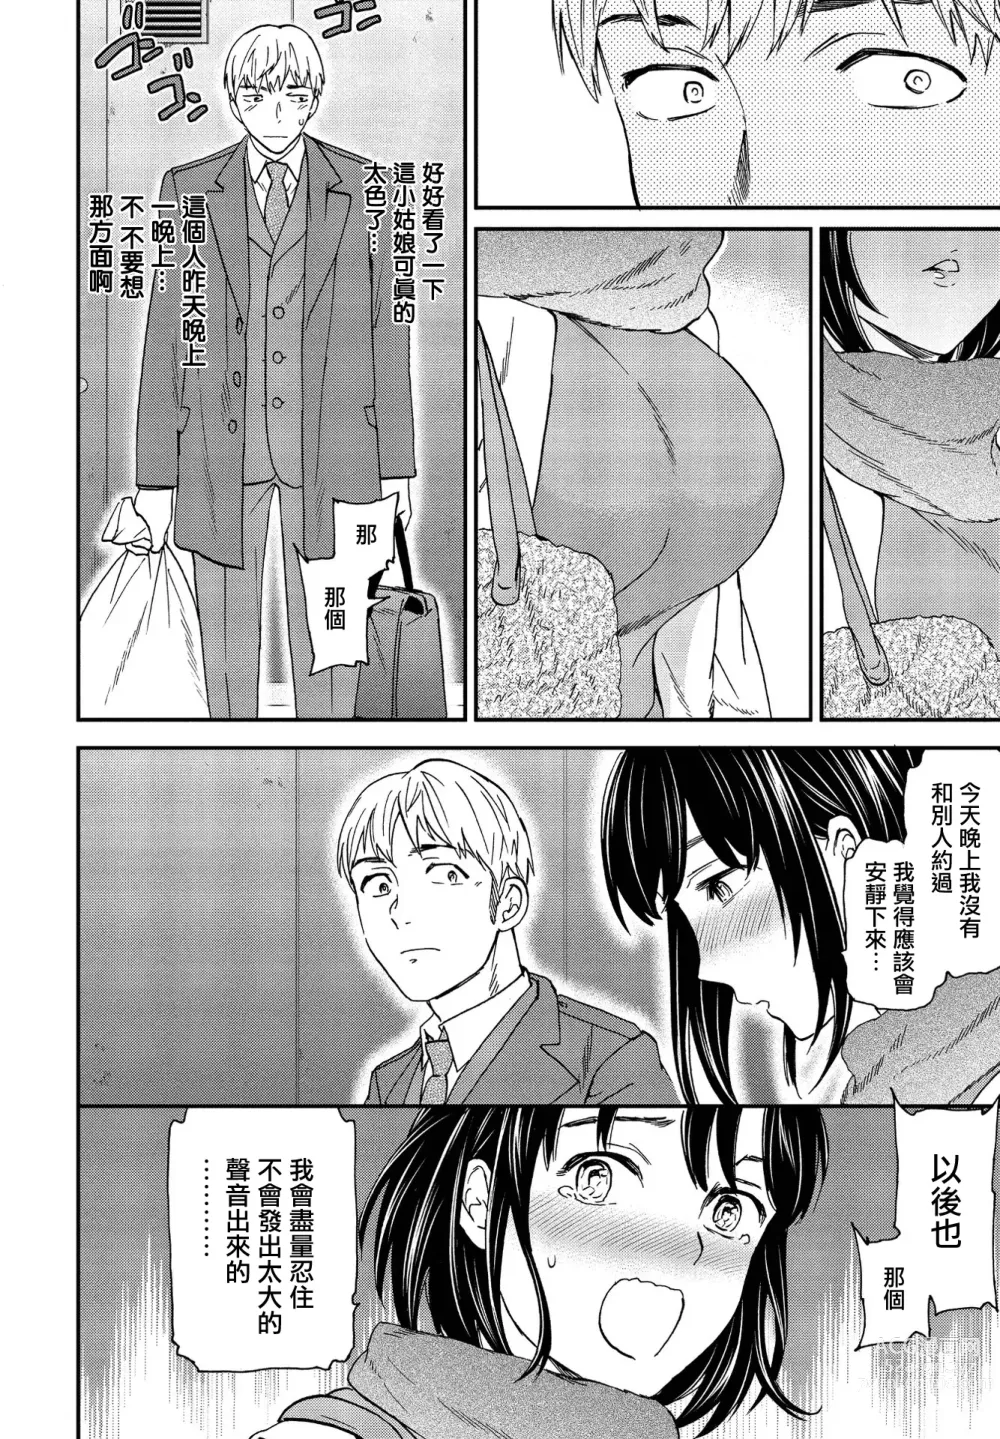 Page 6 of manga Utsubokazura Zenpen